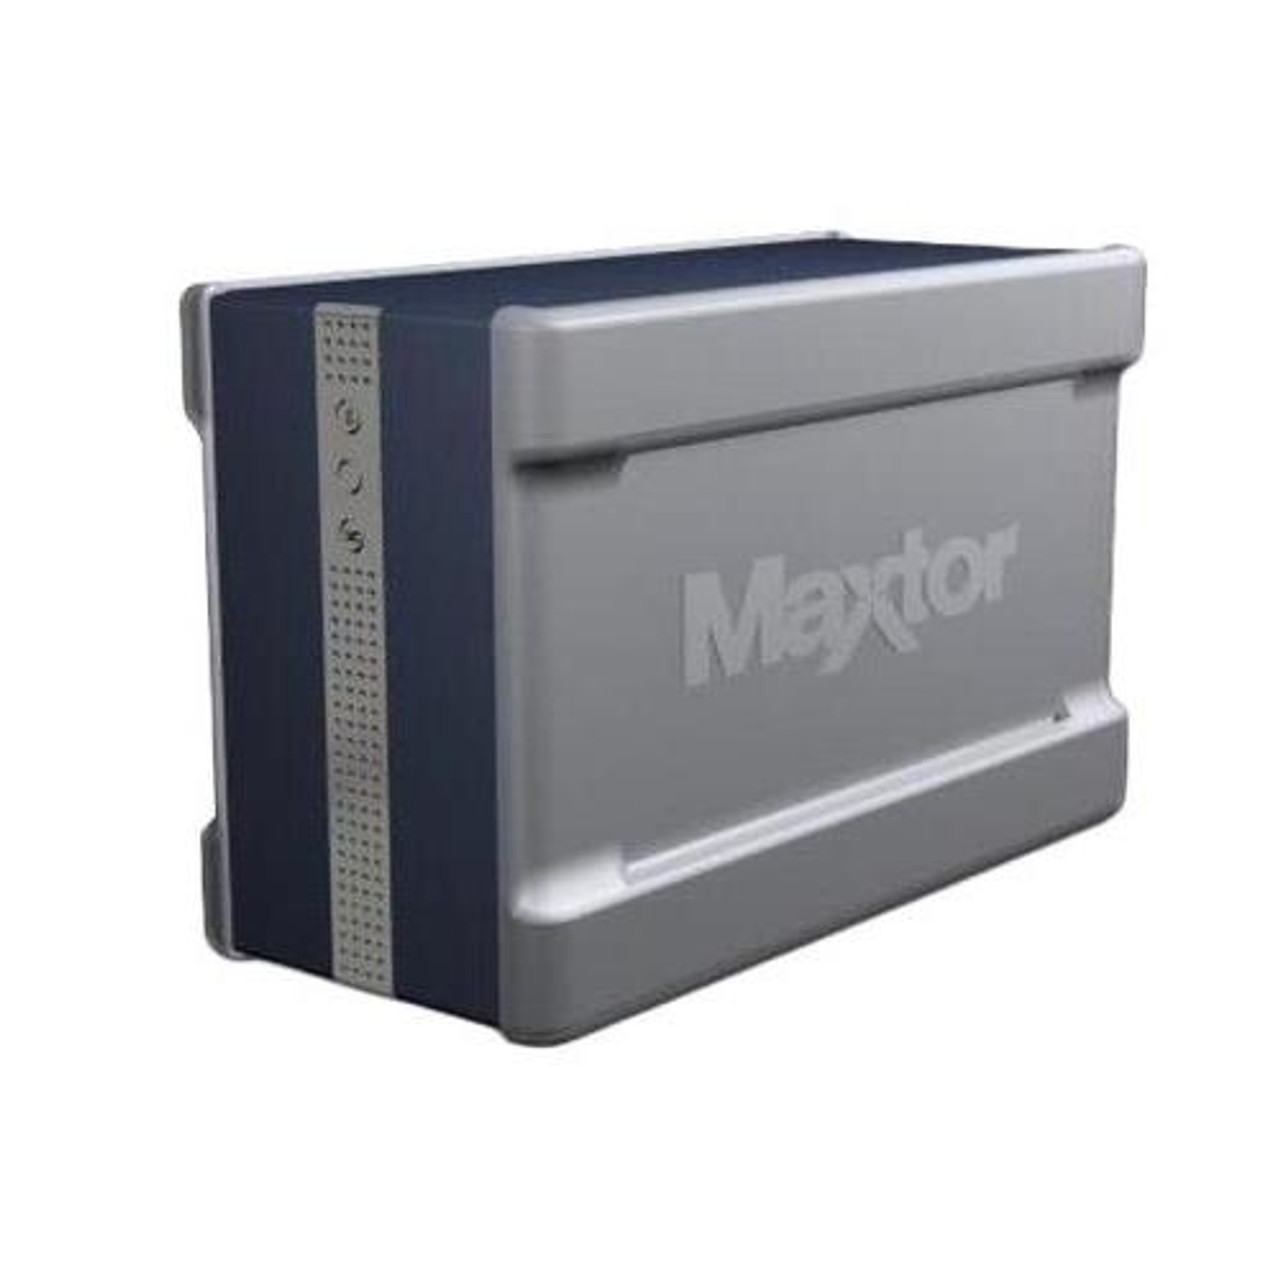 H01AXXX Maxtor Shared Storage